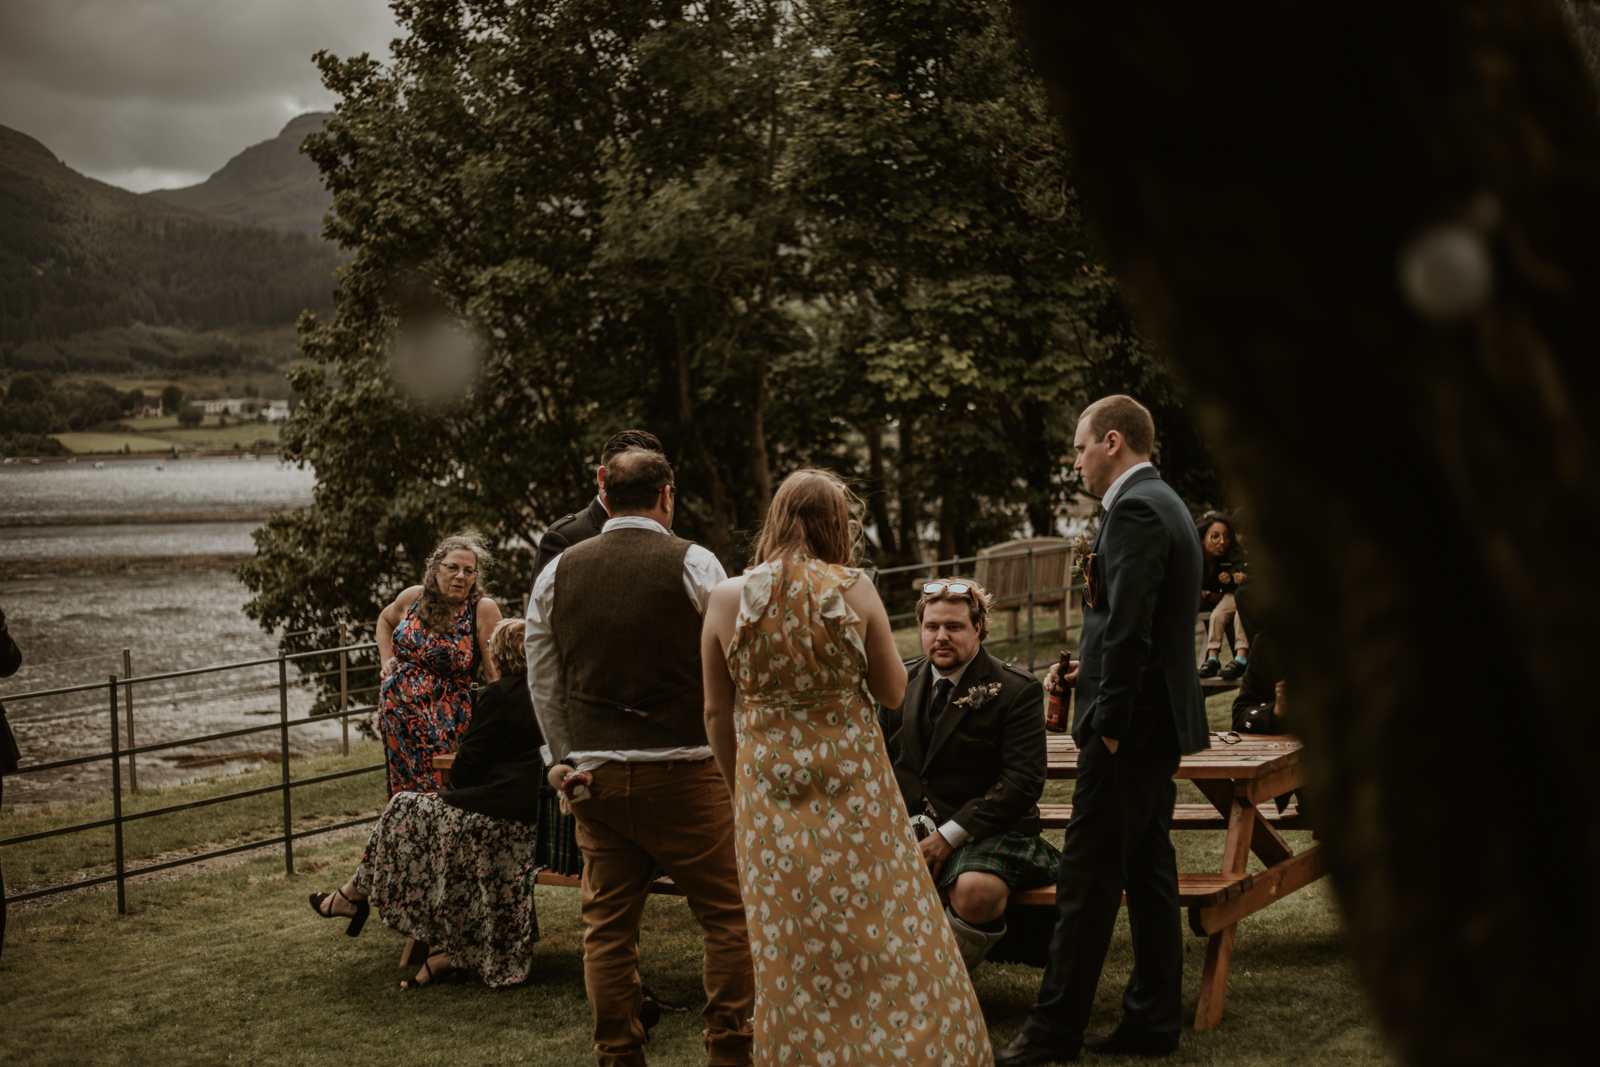 Loch Goil Wedding guests